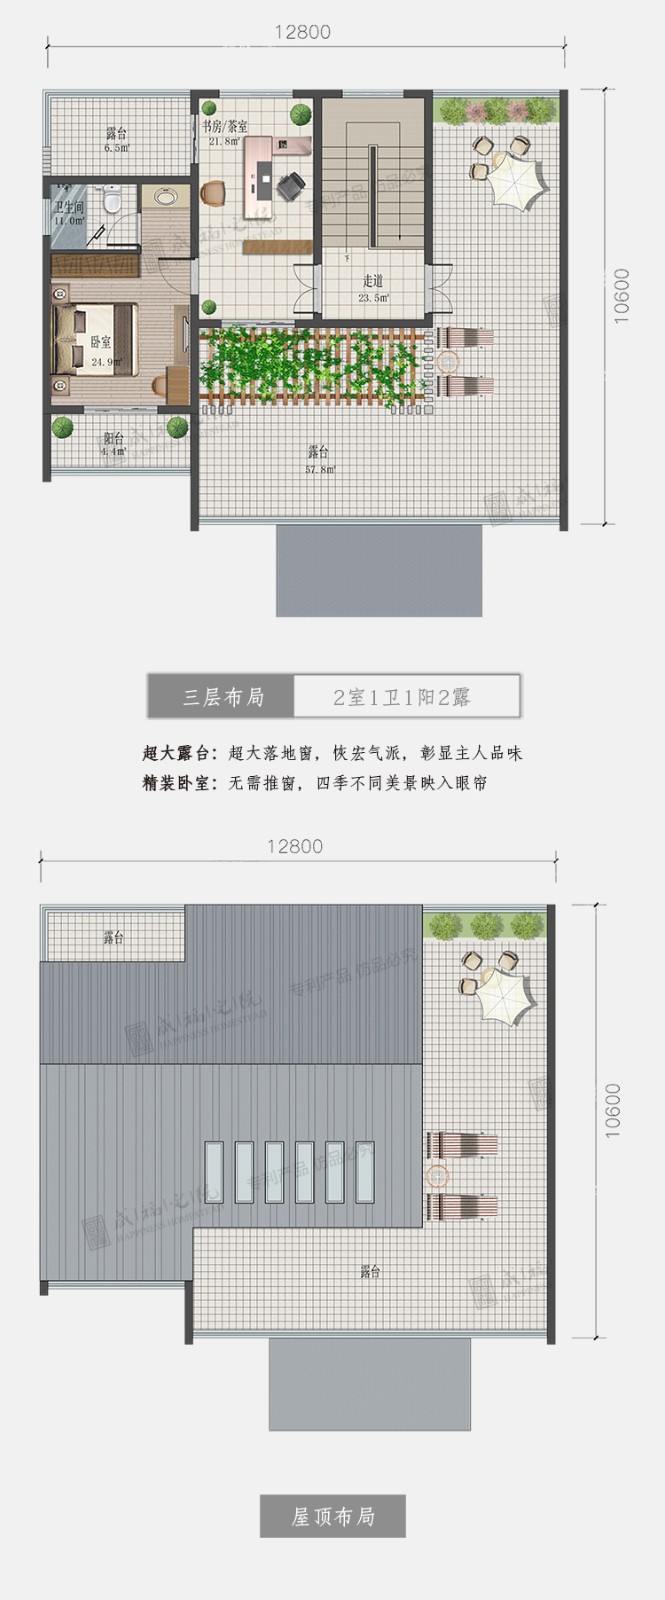 咸福宅院 鴻福系列2021款C1-130三層鄉村別墅-整體精裝修交付